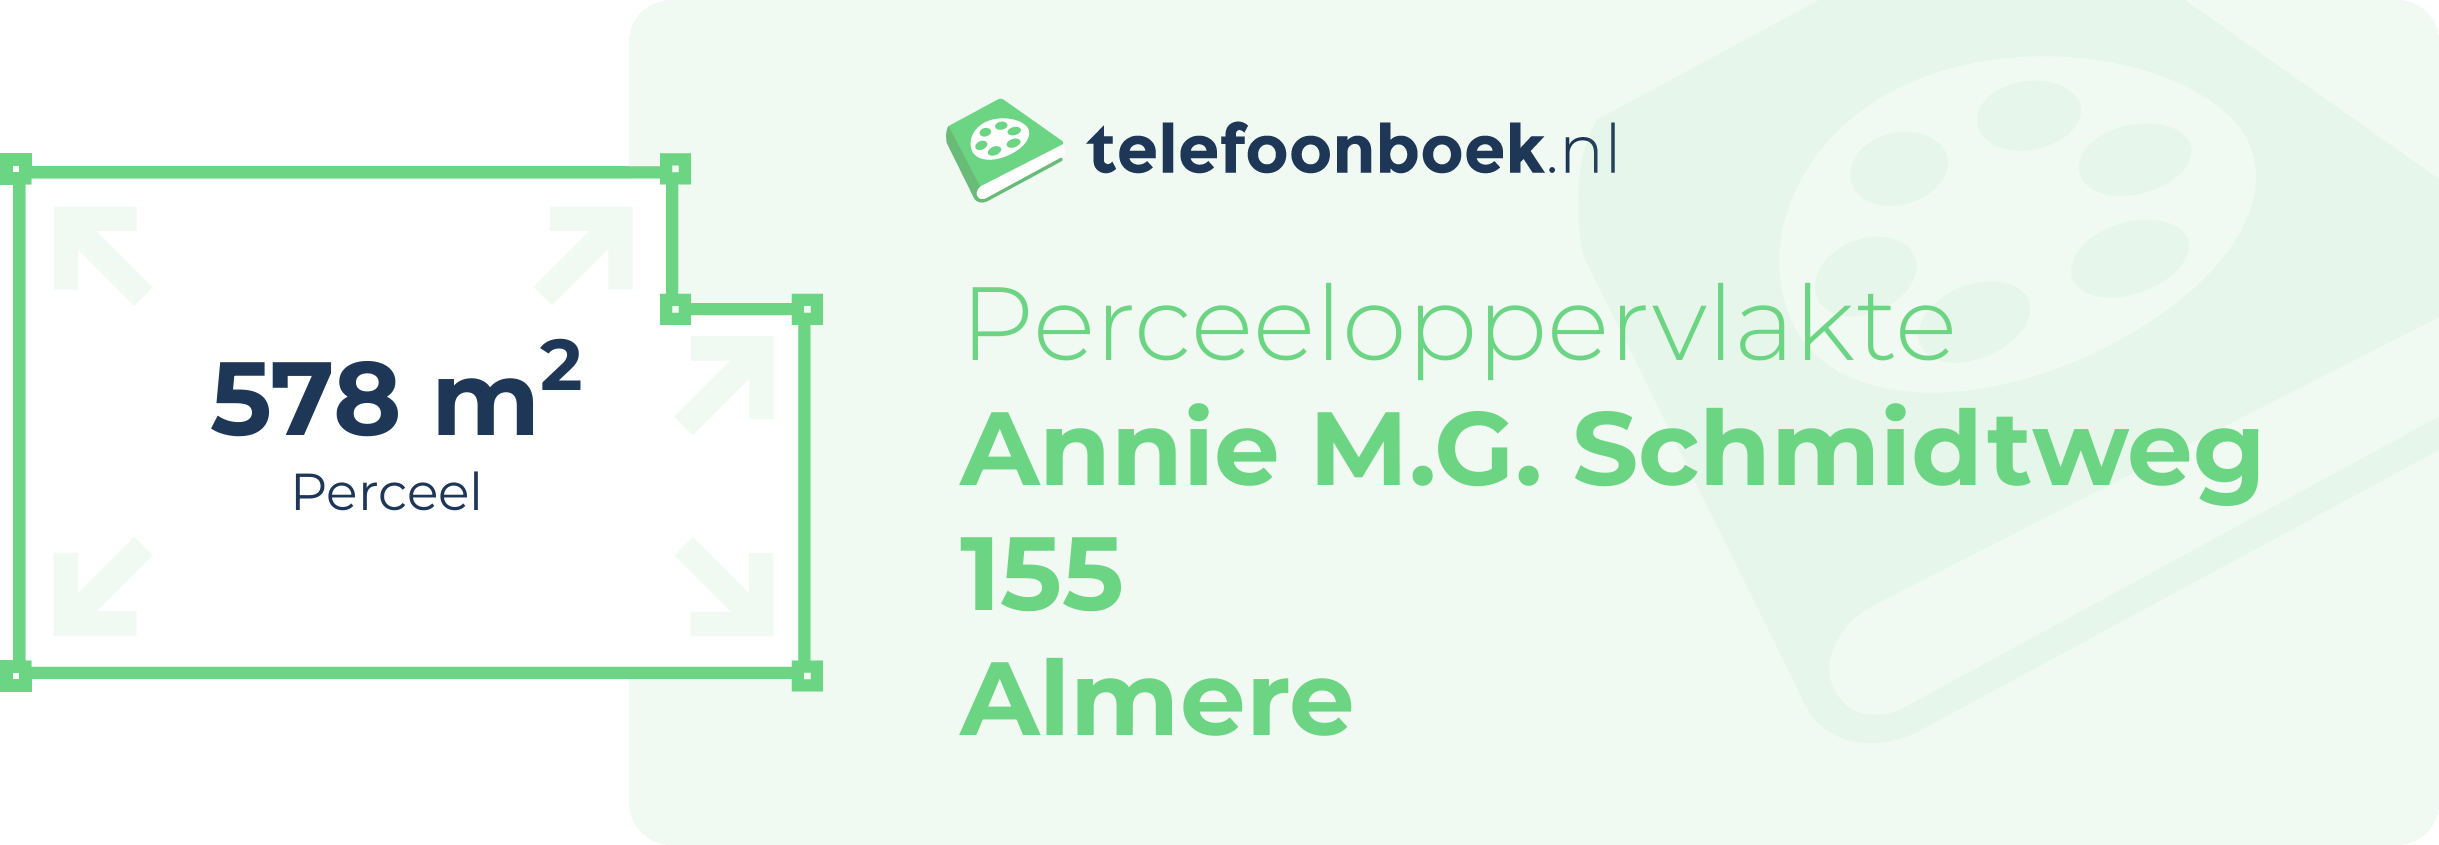 Perceeloppervlakte Annie M.G. Schmidtweg 155 Almere